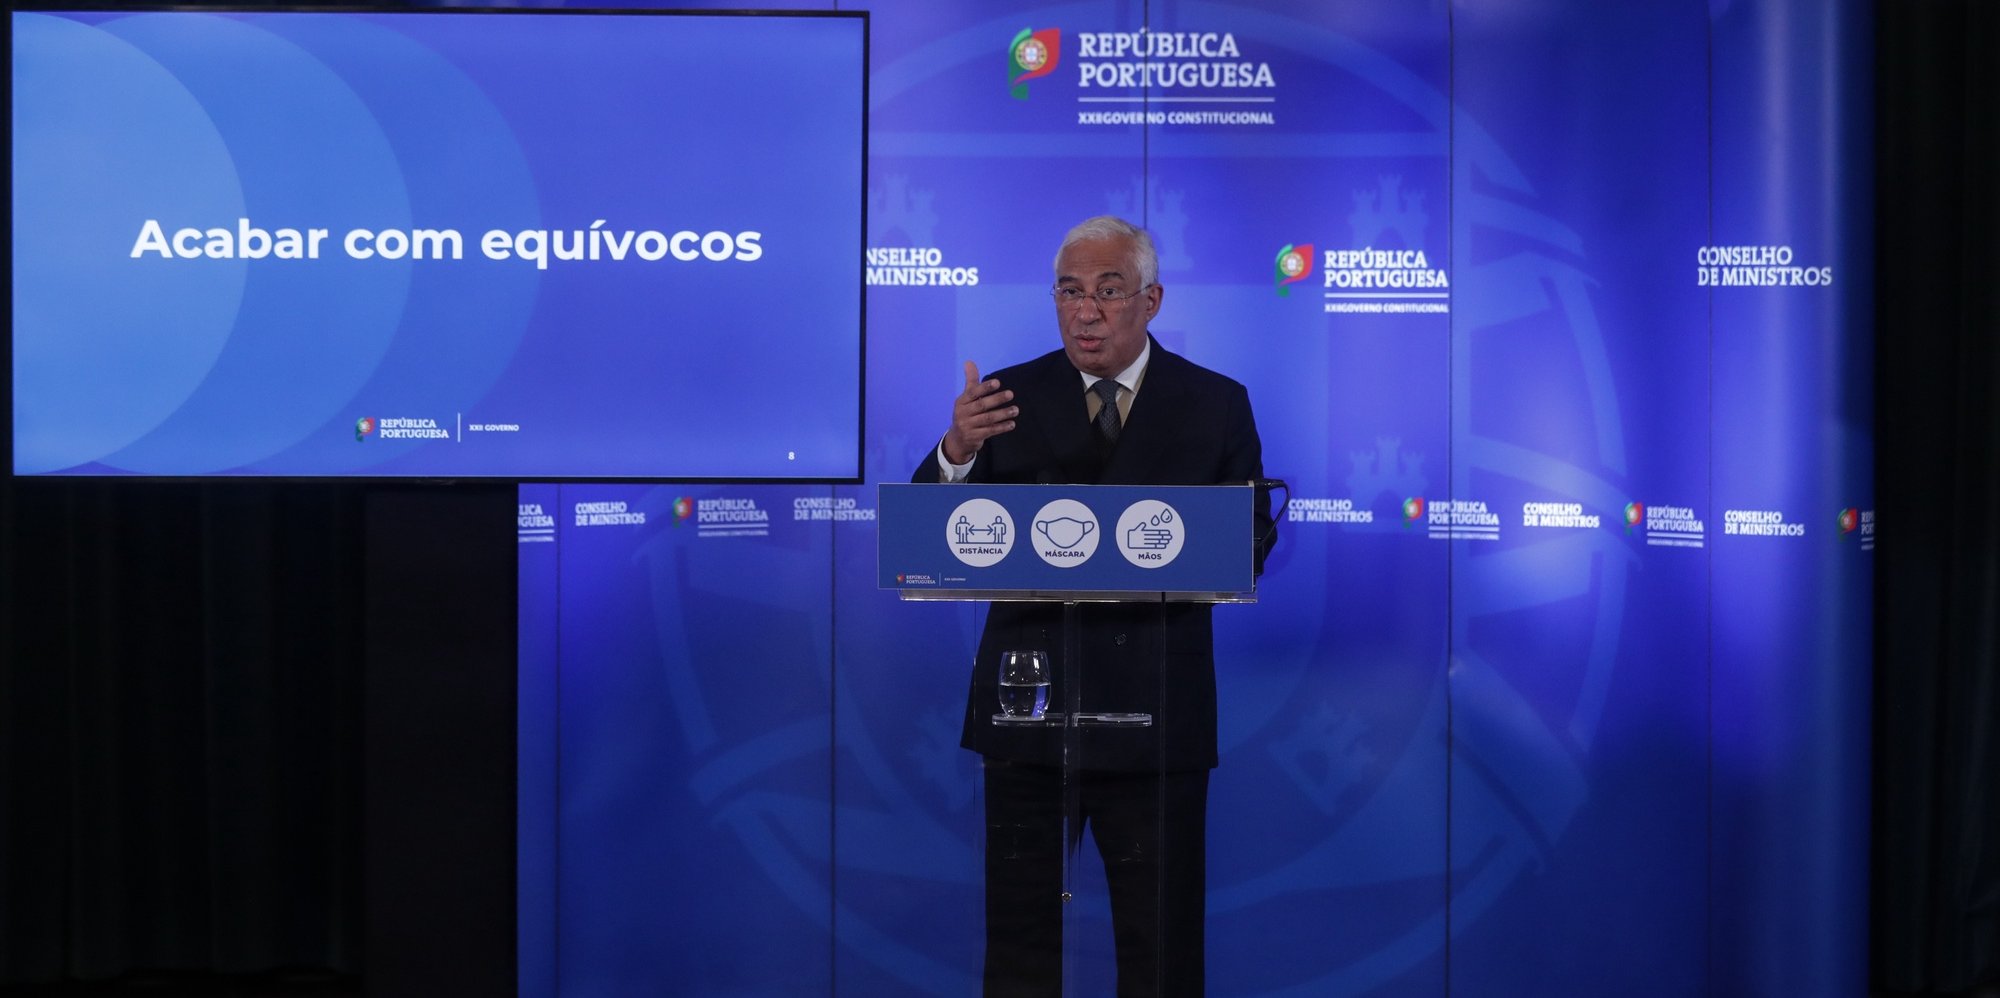 O primeiro-ministro, António Costa, apresenta em conferência de imprensa as conclusões da reunião de Conselho de Ministros,  realizada no Palácio da Ajuda em Lisboa, 12 de novembro de 2020. TIAGO PETINGA/LUSA